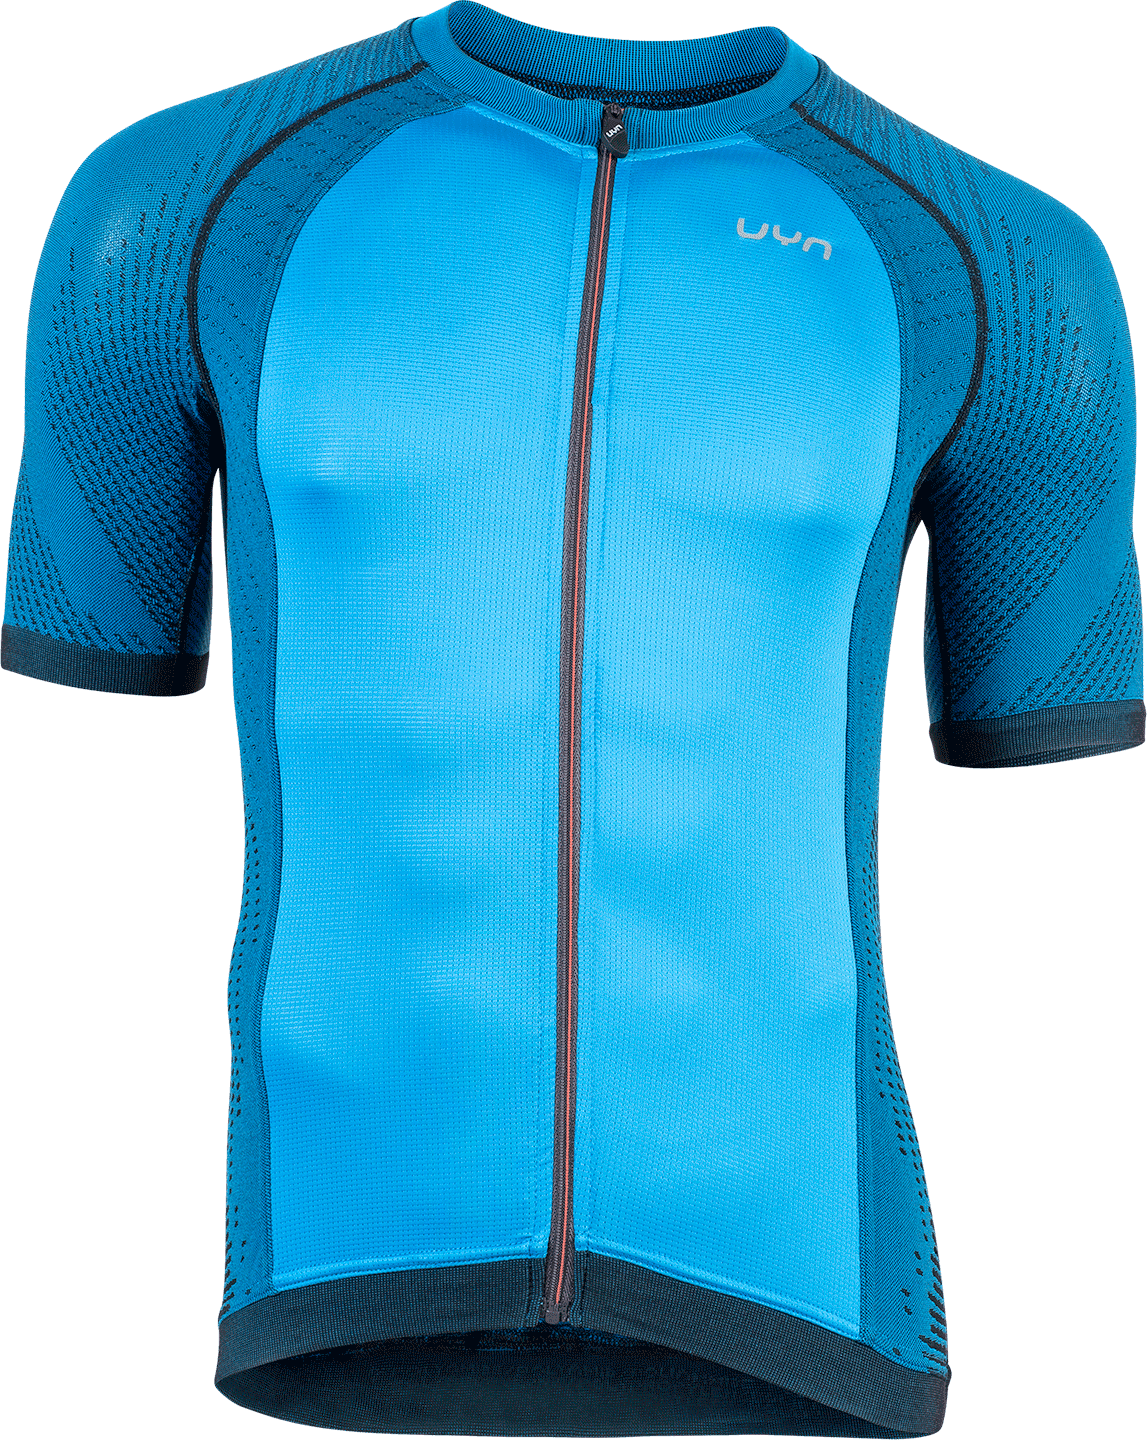 UYN activyon biking maillot de cyclisme à manches courtes bleu dodger noir